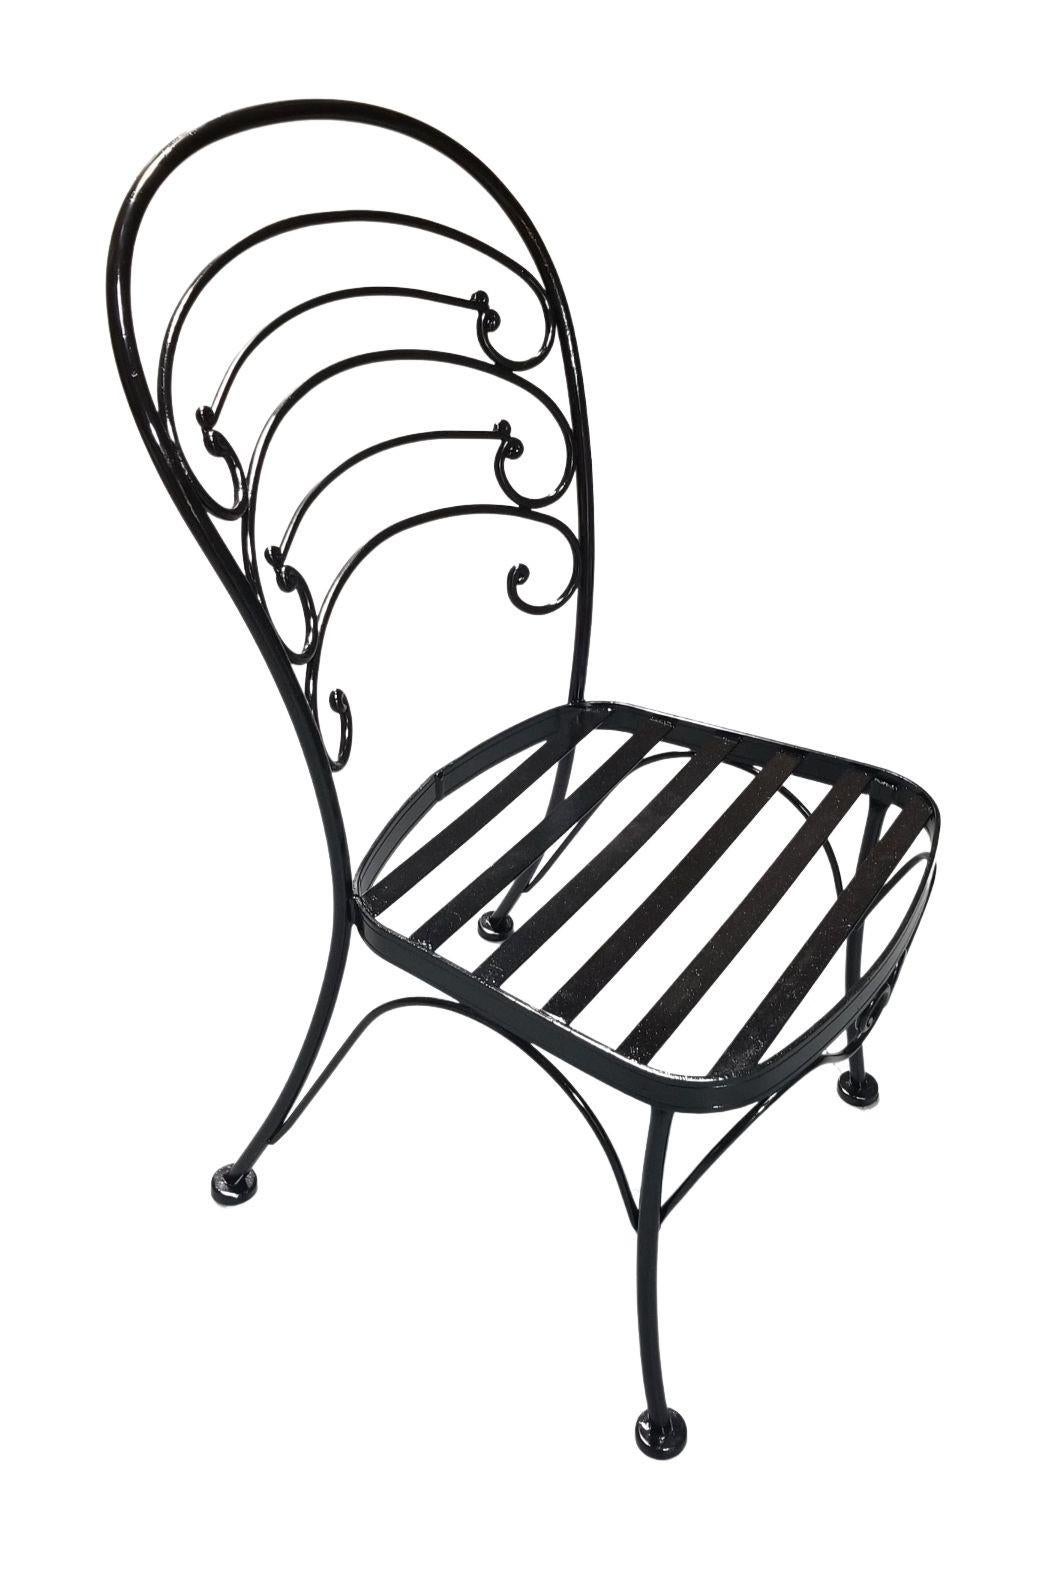 Un lot vintage de 30 chaises de jardin en fer du milieu du siècle récemment restaurées en finition noire. Ces chaises sont inspirées des chaises de café françaises que l'on trouvait à Paris dans les années 1950, avec la qualité de fabricants connus